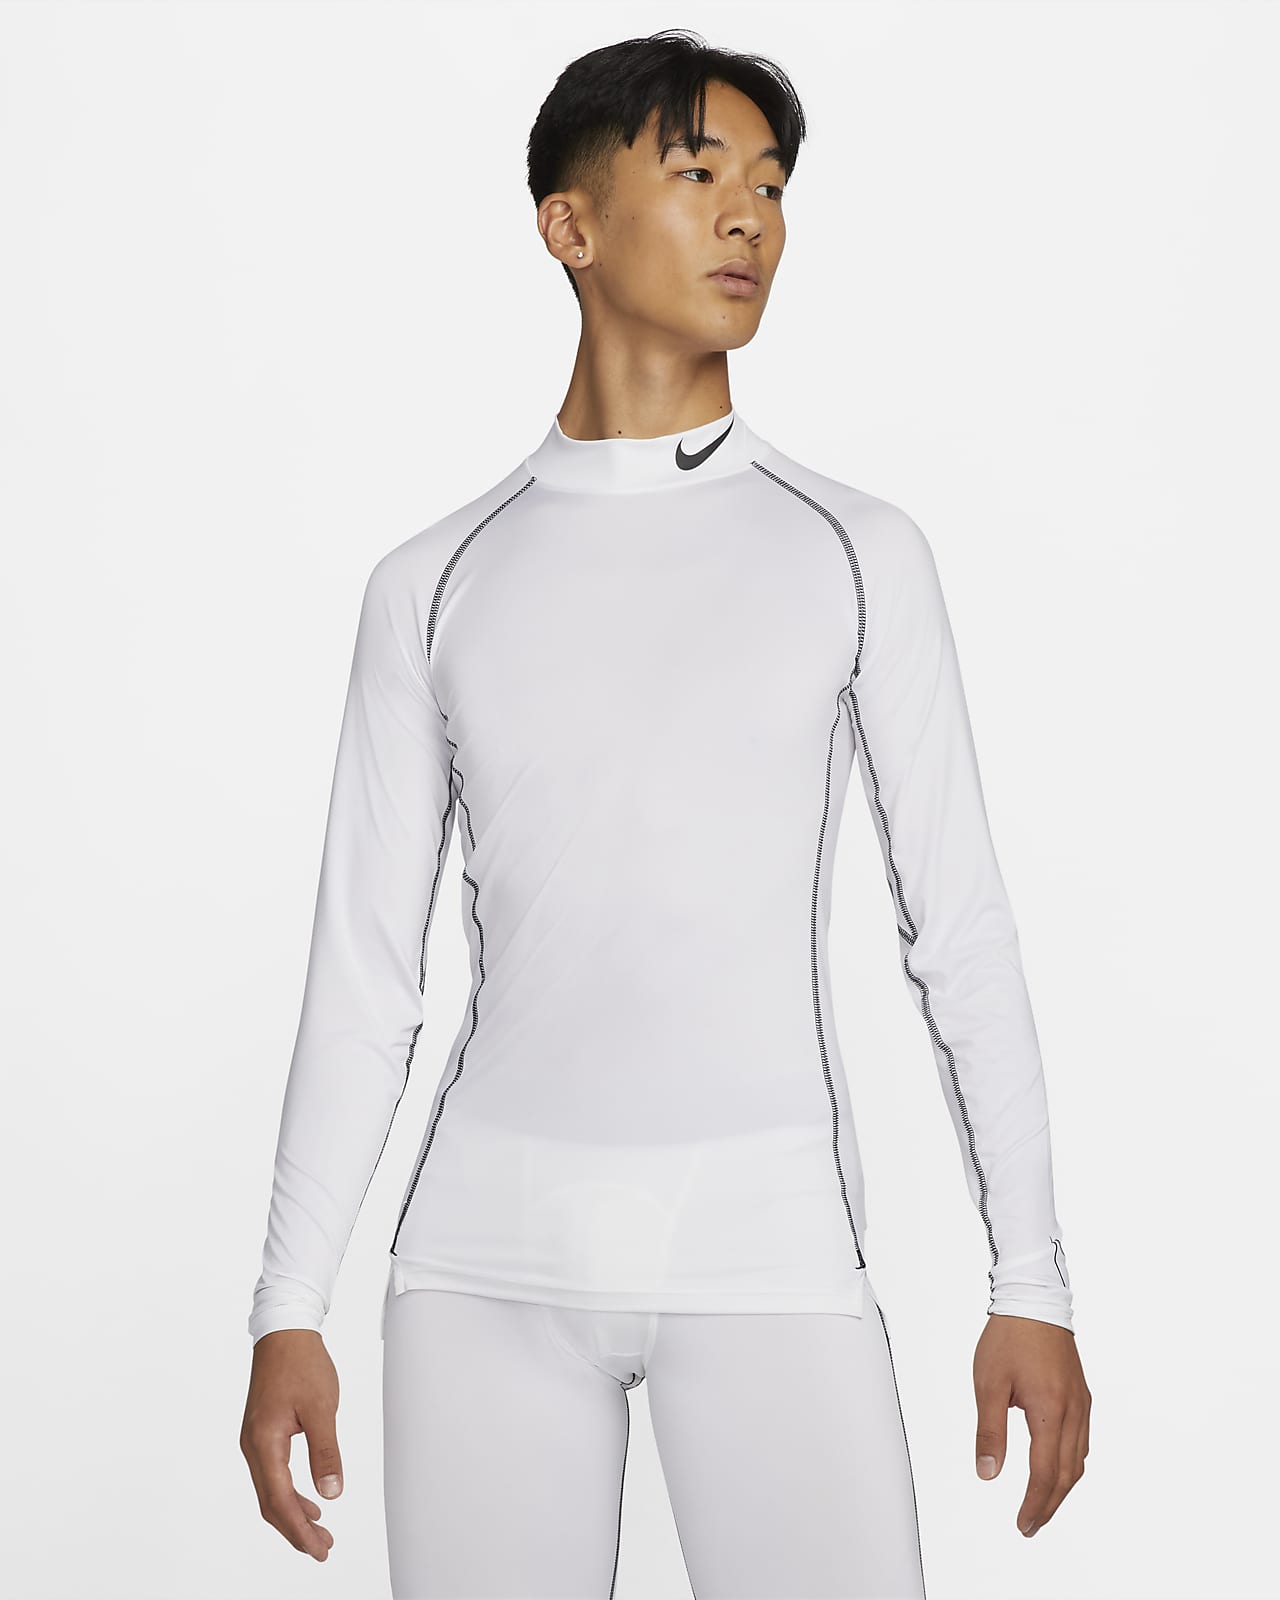 Ανδρική μακρυμάνικη μπλούζα με στενή εφαρμογή Nike Pro Dri-FIT